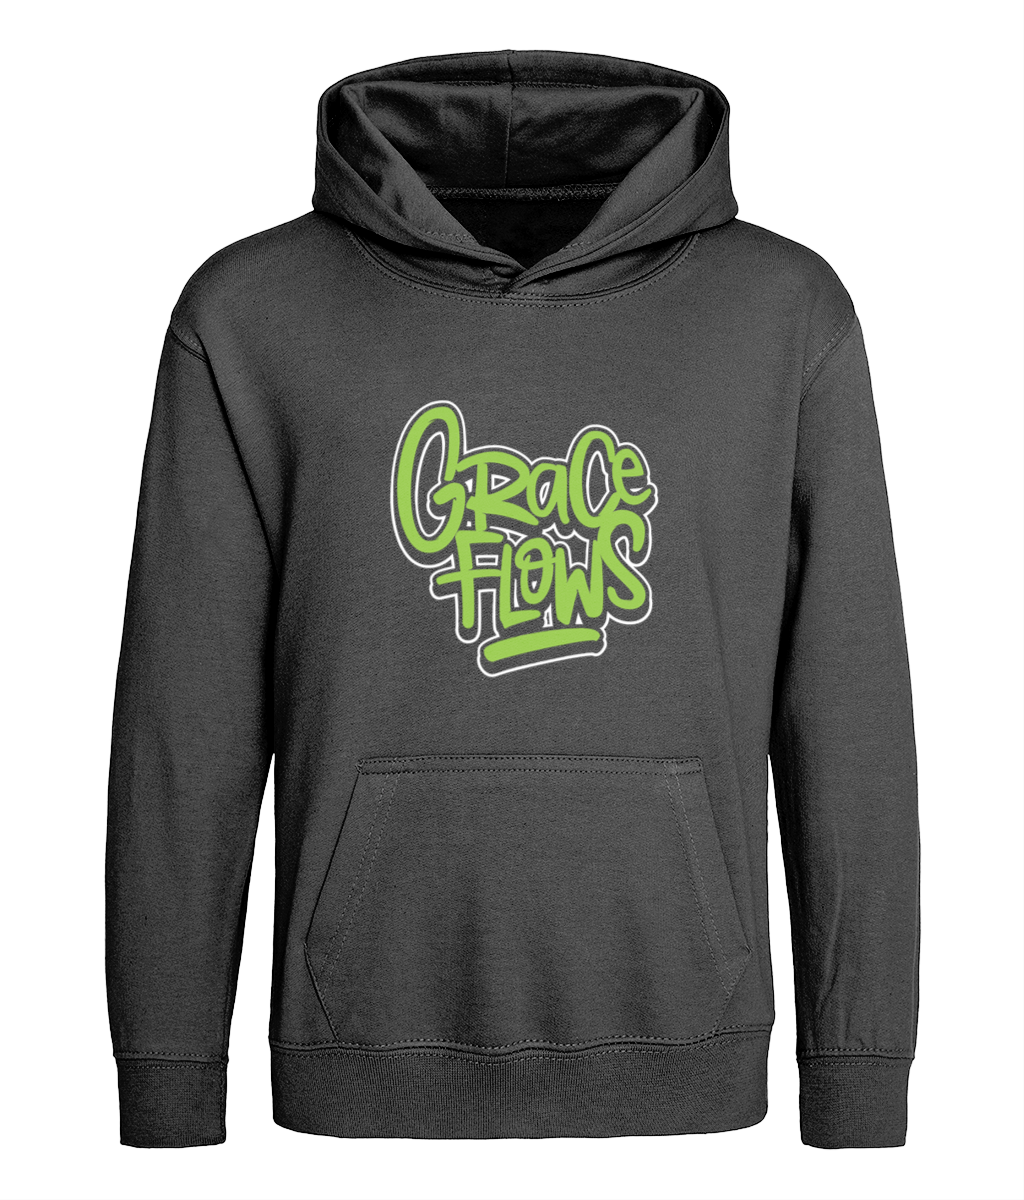 Grace flows design on black kids hoodie